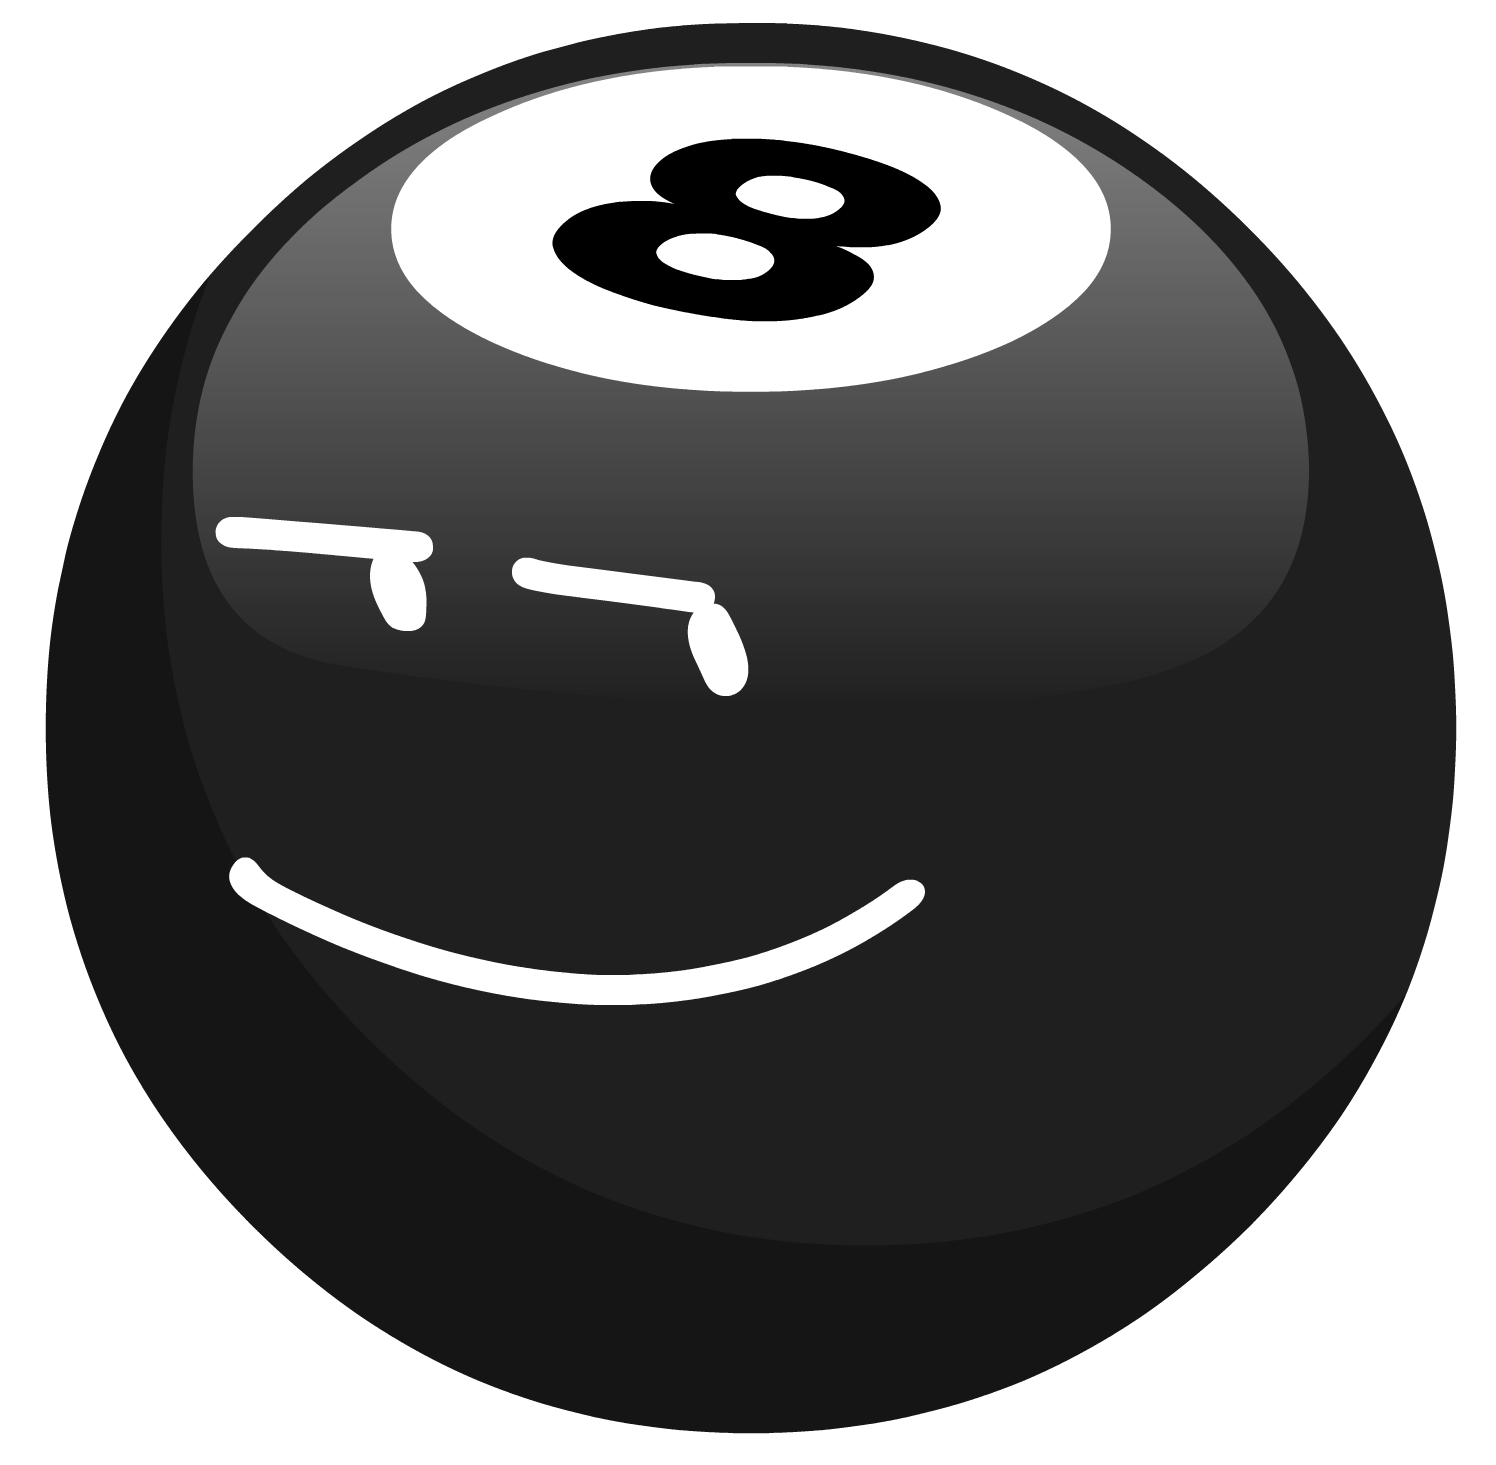 8 Ball | Object Filler Wiki | FANDOM powered by Wikia - 